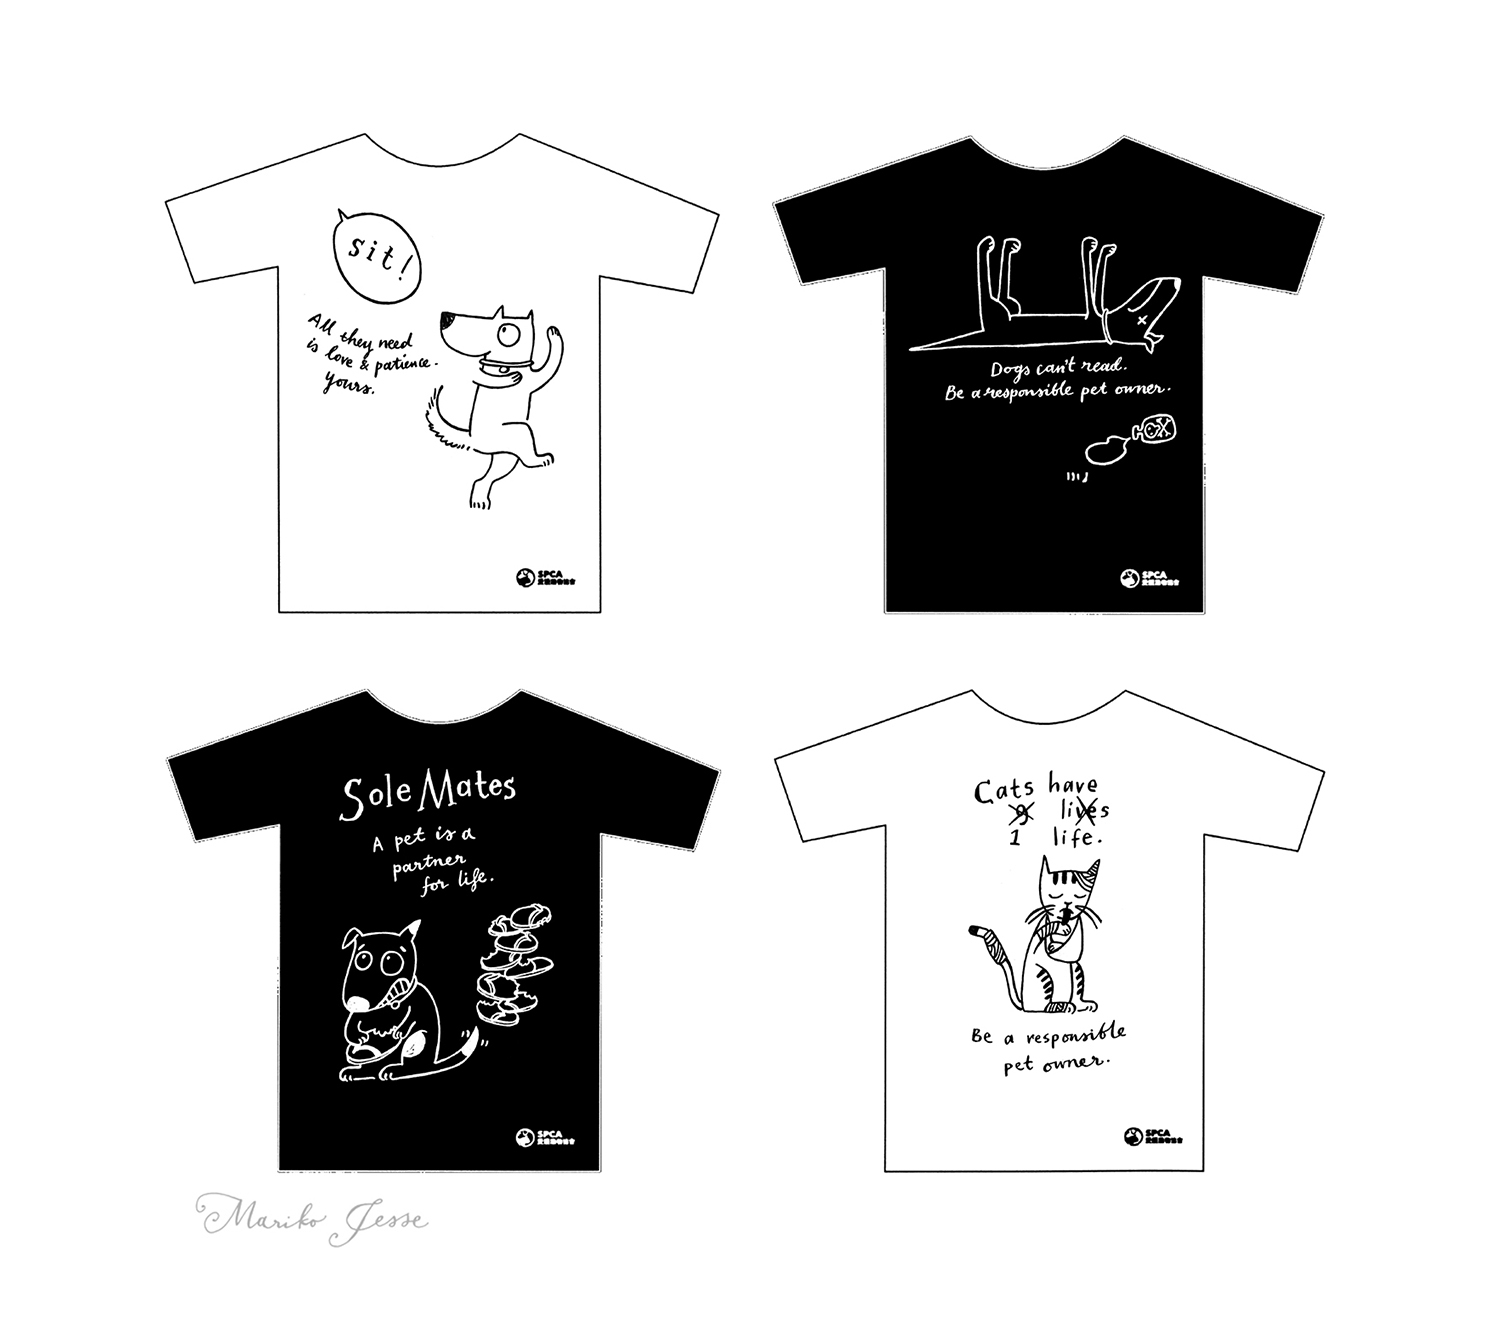 SPCA tshirts